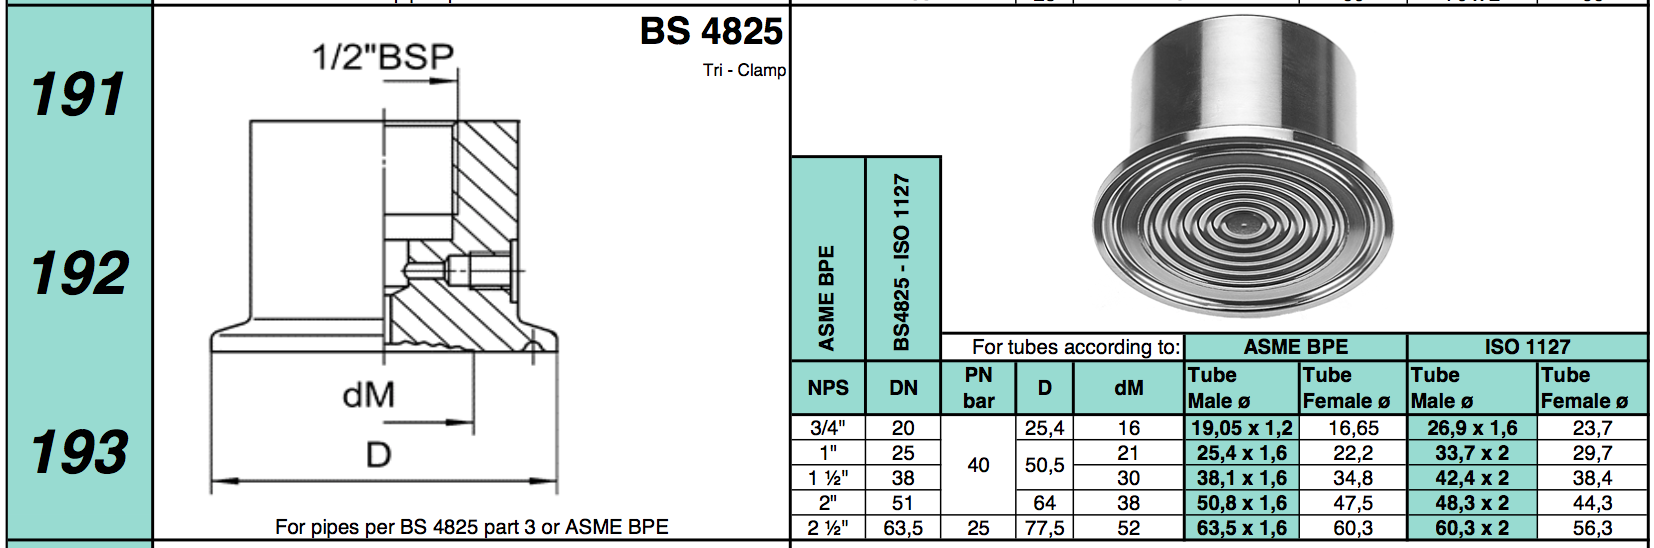 chuẩn kết nối dạng tri clamp BS 4825